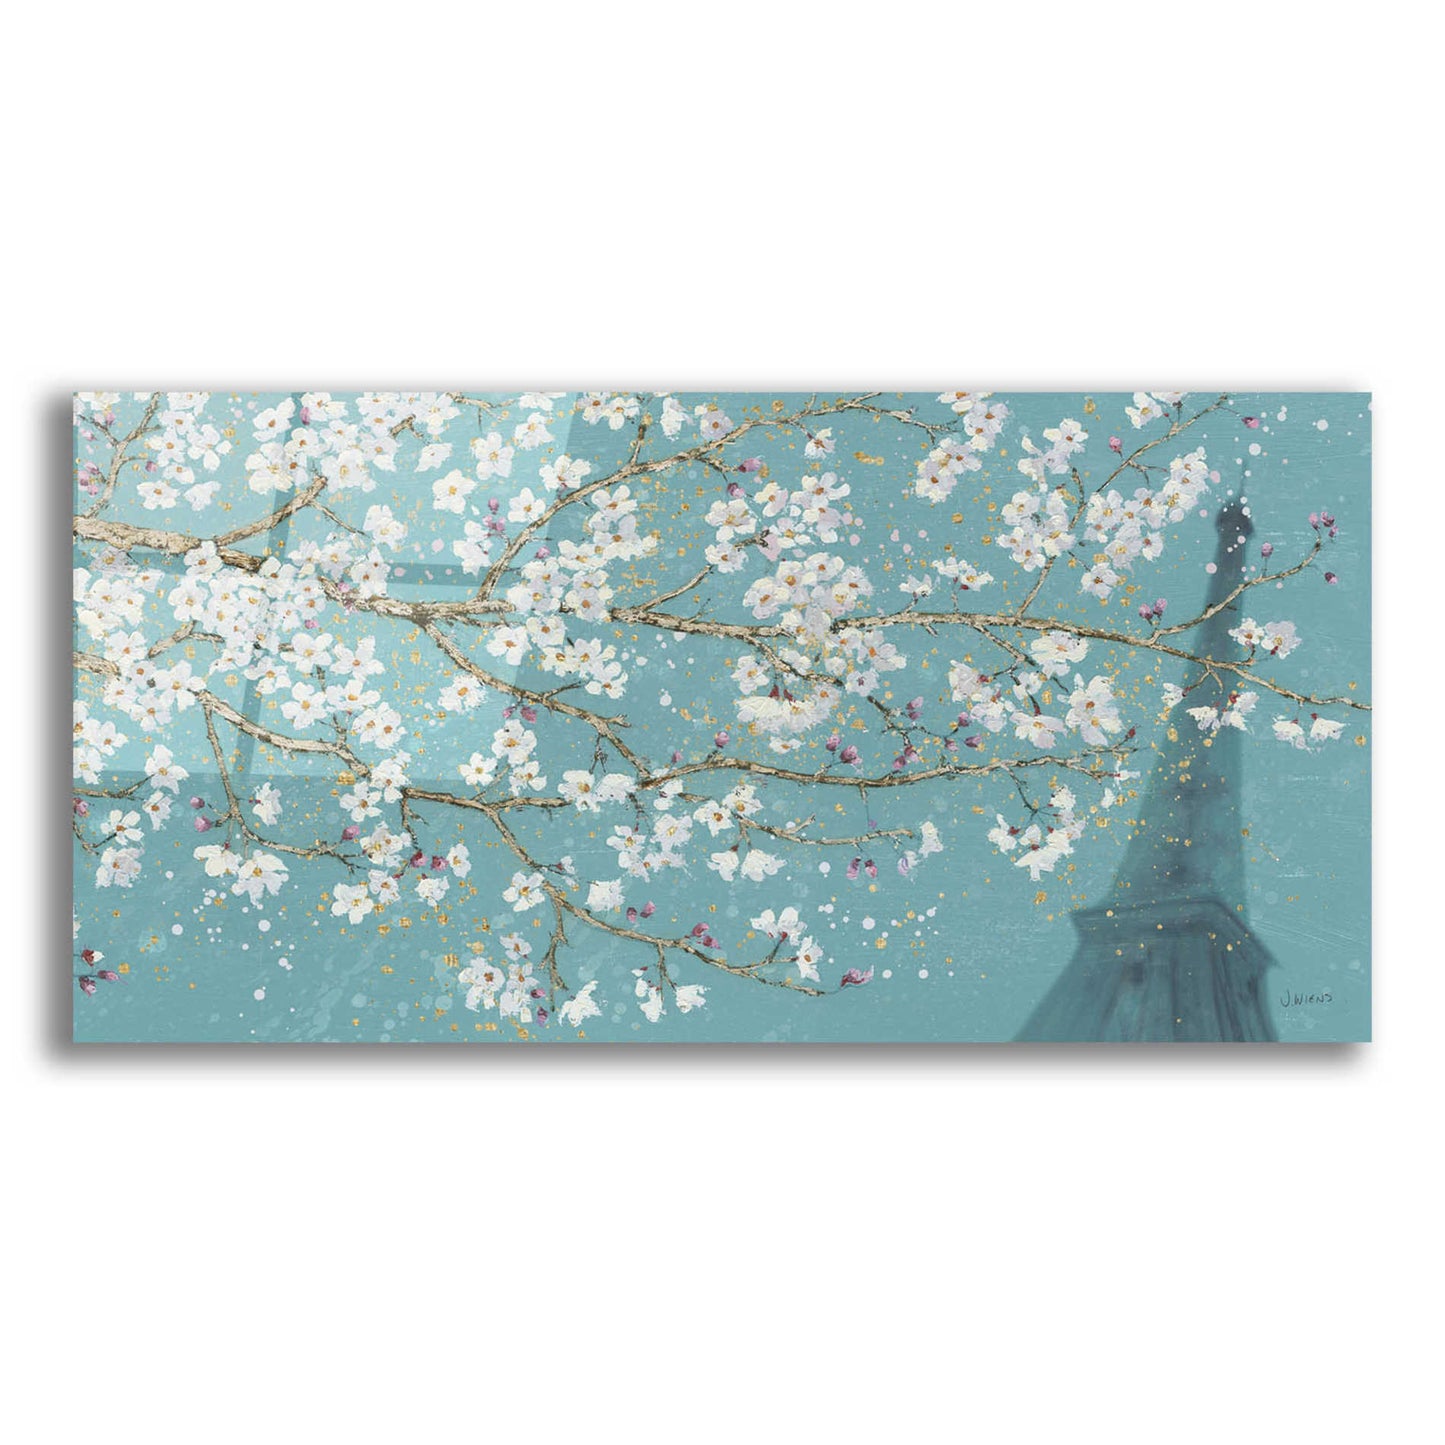 Epic Art 'April Breeze II' by James Wiens, Acrylic Glass Wall Art,24x12x1.1x0,40x20x1.74x0,60x30x1.74x0